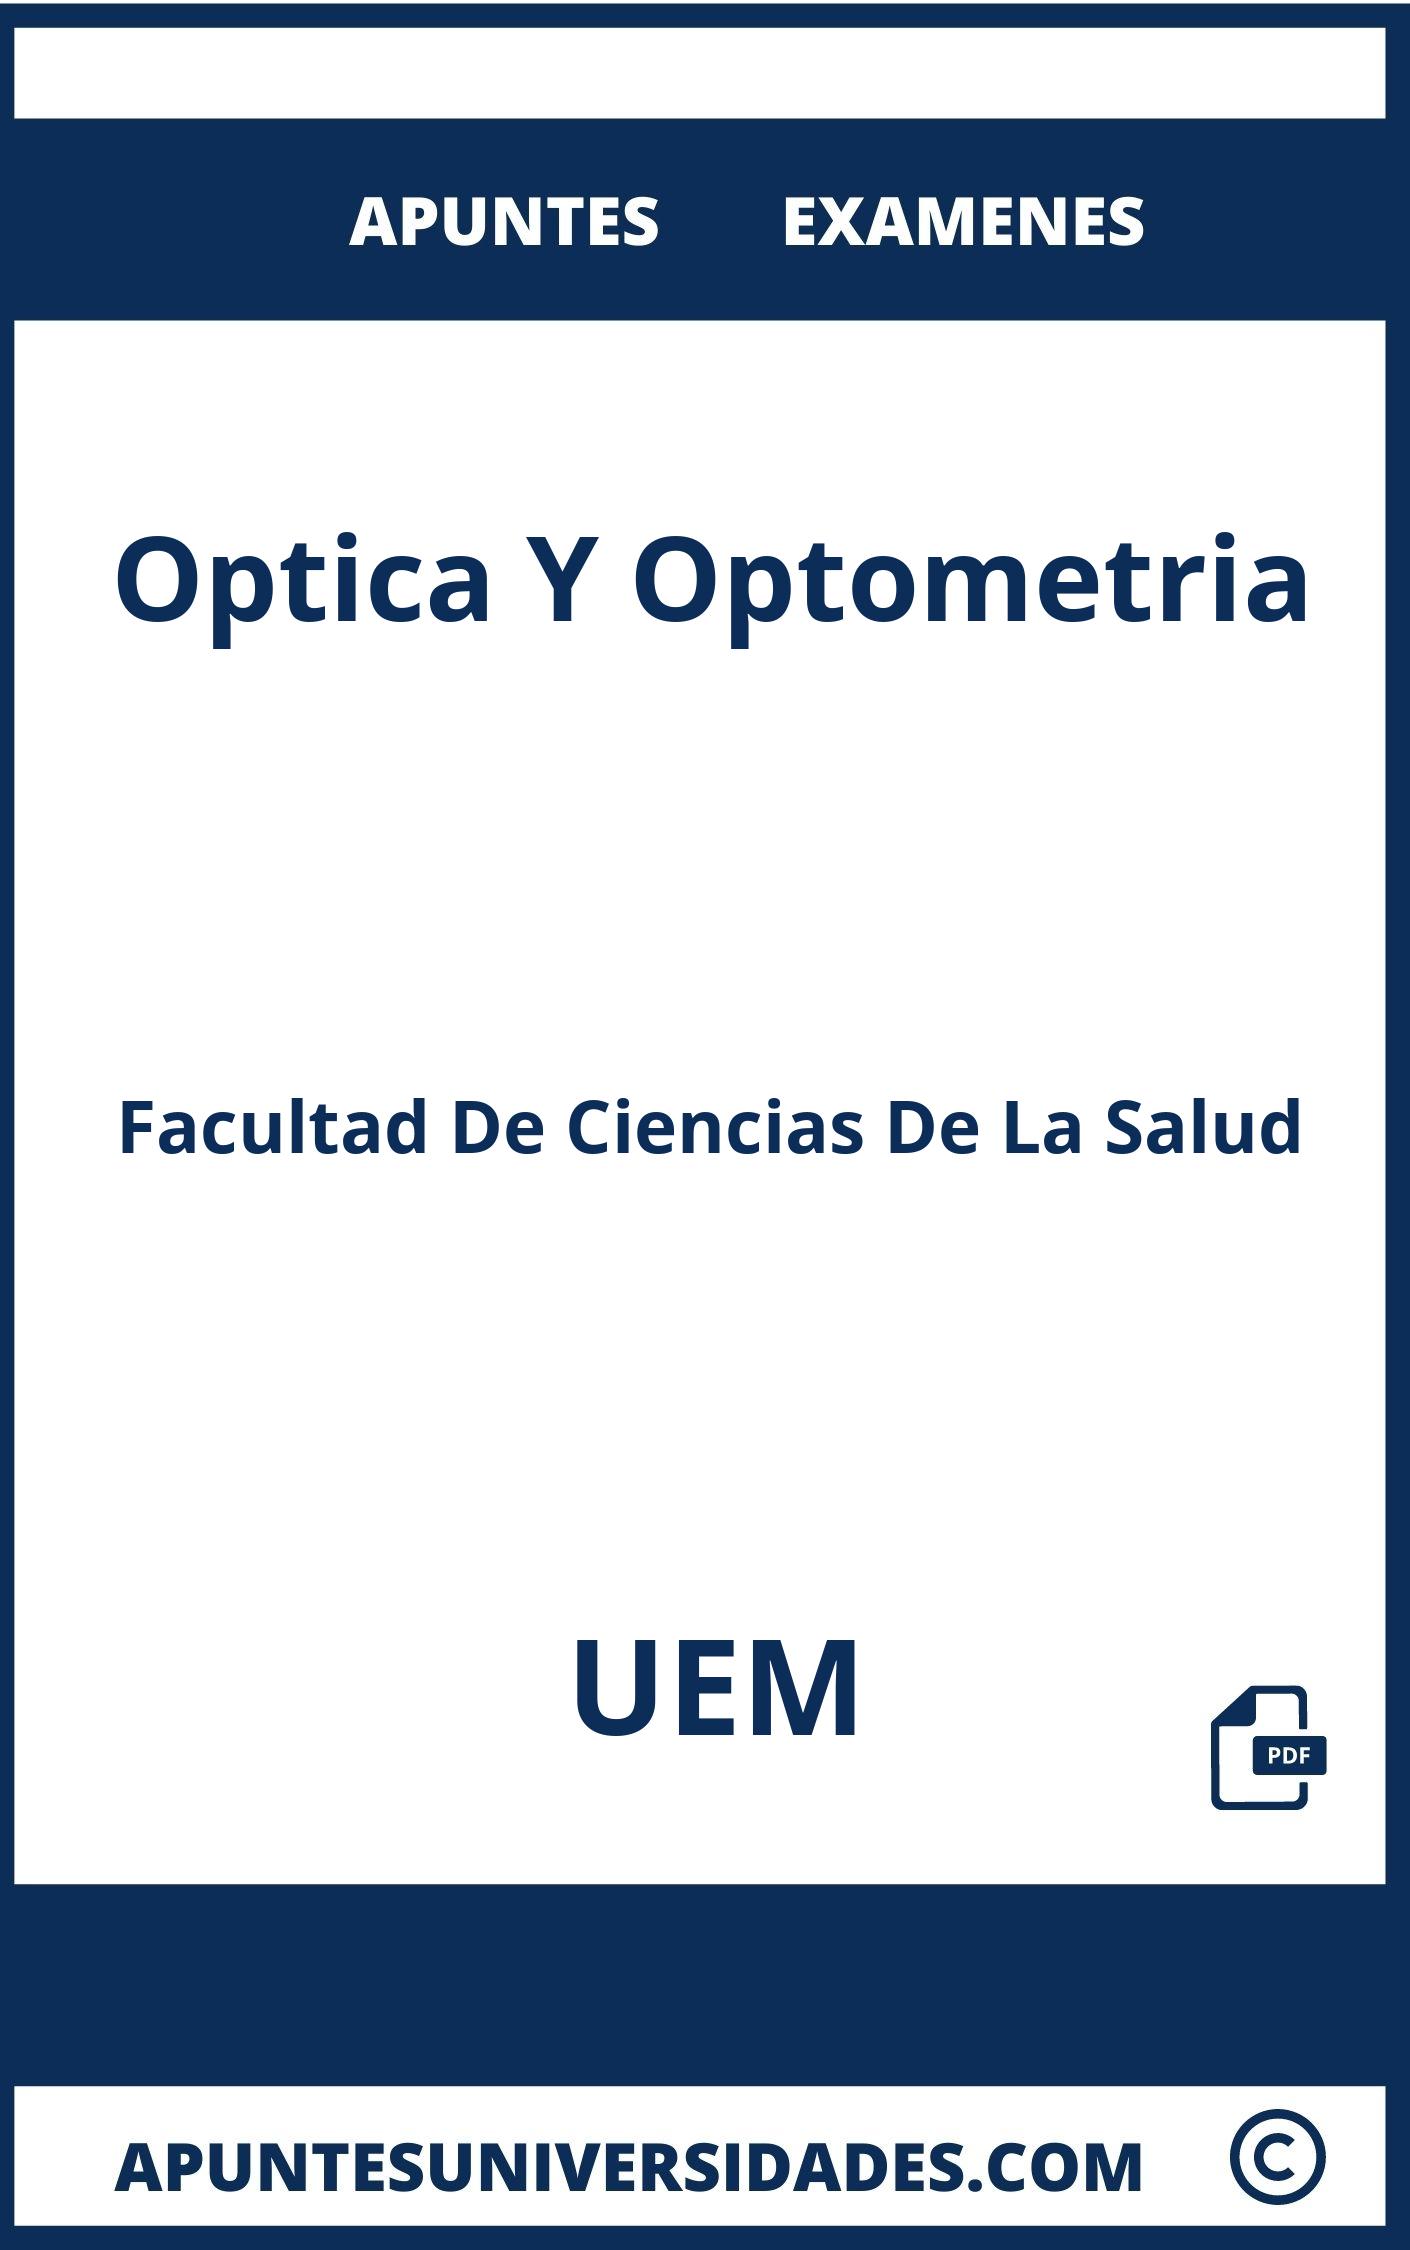 Examenes y Apuntes Optica Y Optometria UEM